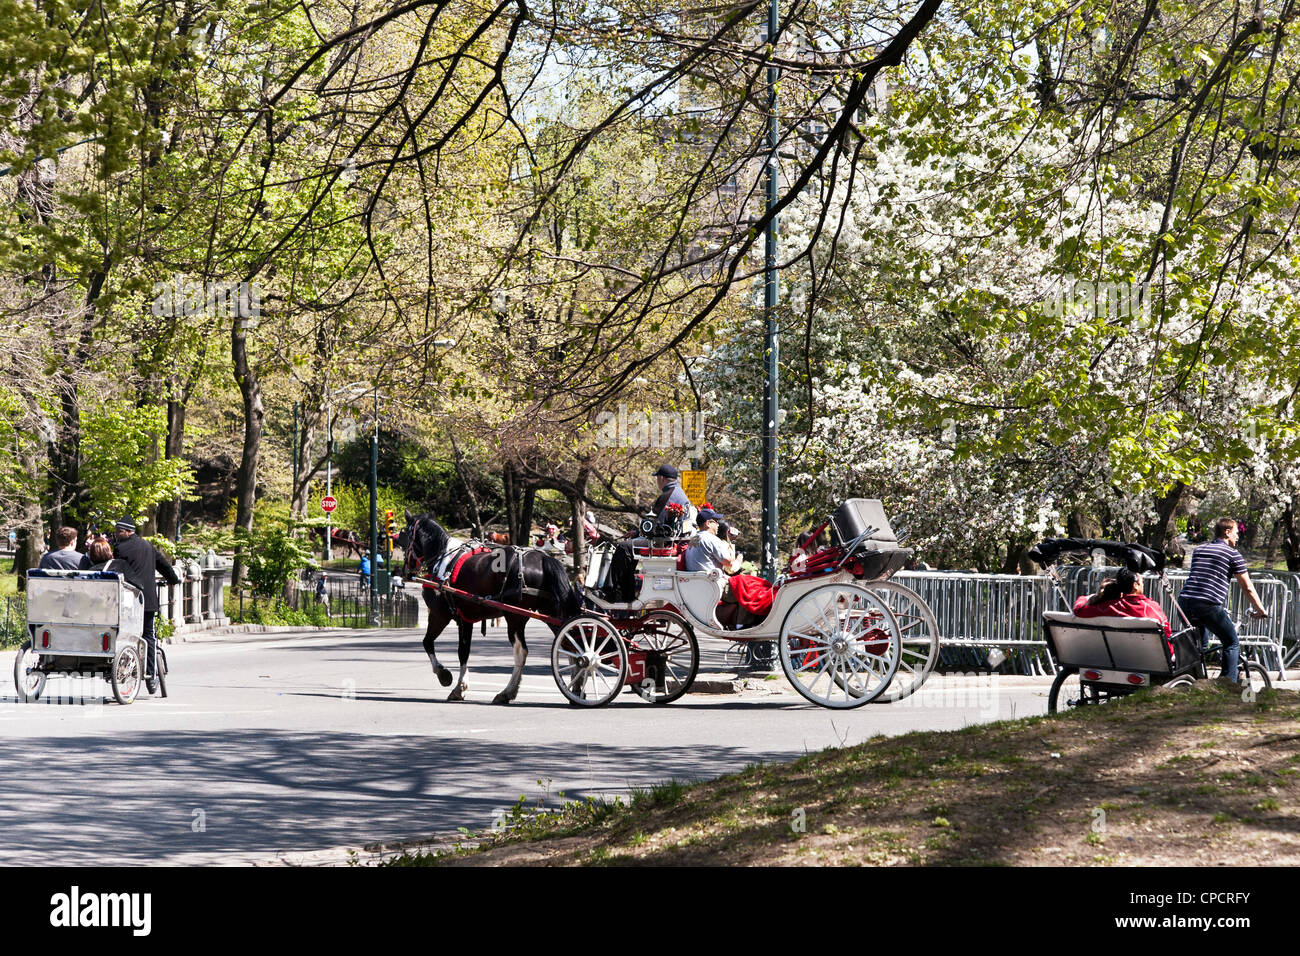 Horse & carriage & traditionnel rival pedicabs donnent aux visiteurs visite romantique de Central Park sur la belle journée de printemps New York City Banque D'Images